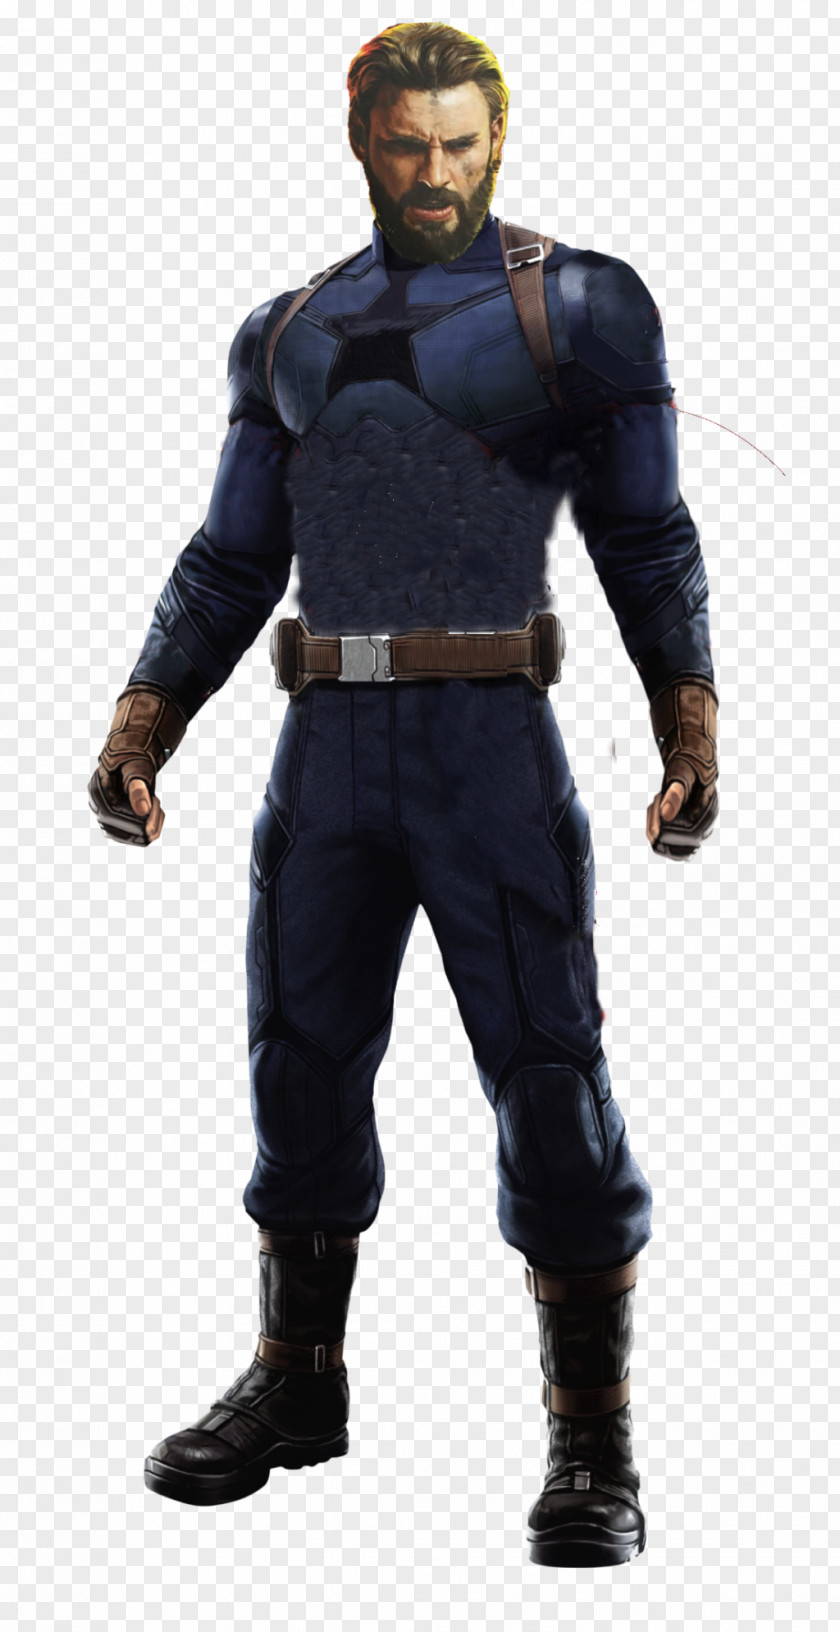 Captain America America: Civil War Hulk Black Panther PNG